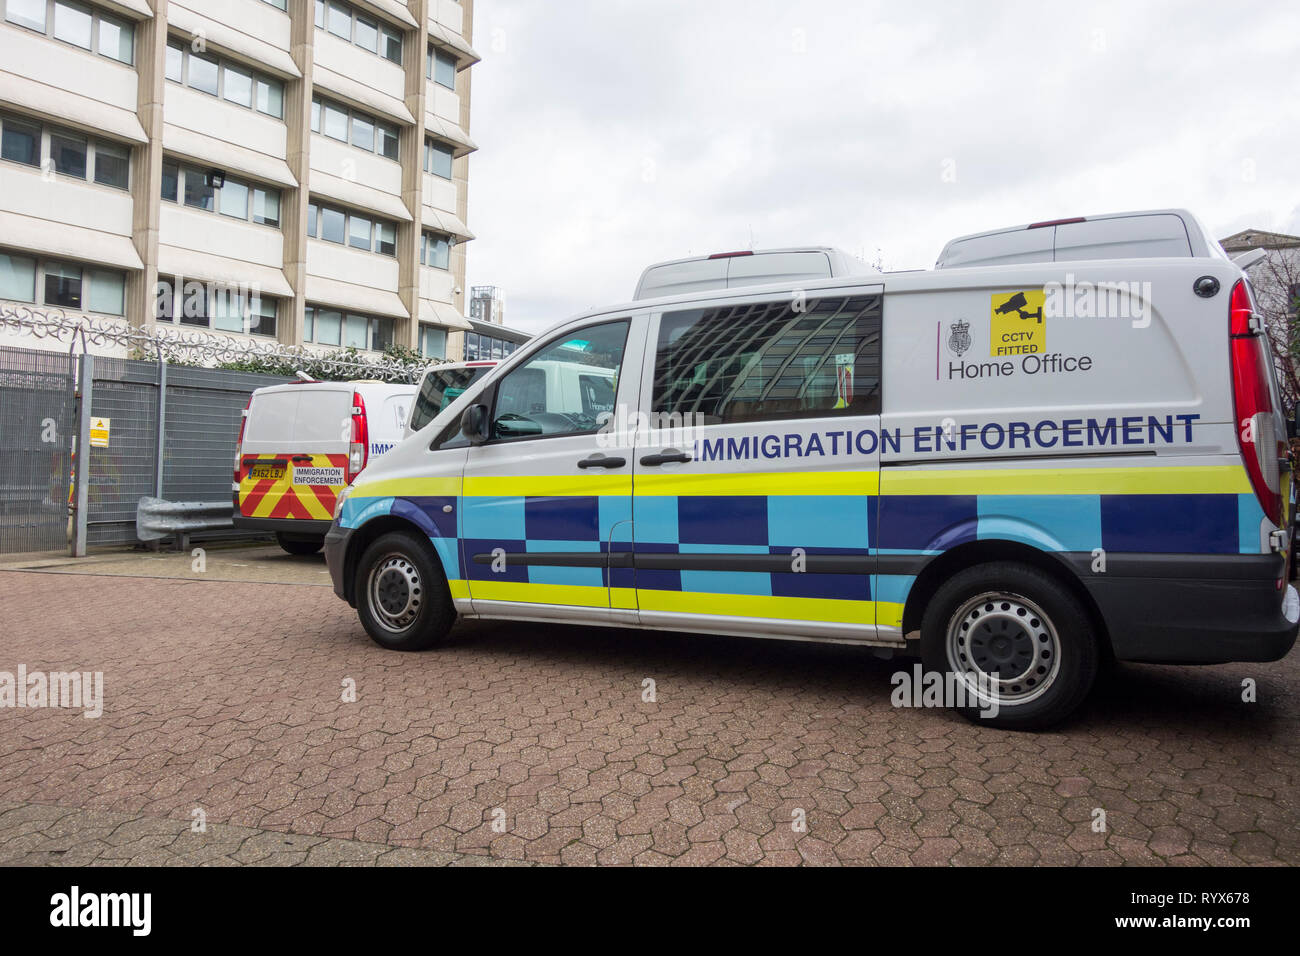 Der Van der Einwanderungsbehörde parkte vor einem Gebäude in London, England, Großbritannien Stockfoto